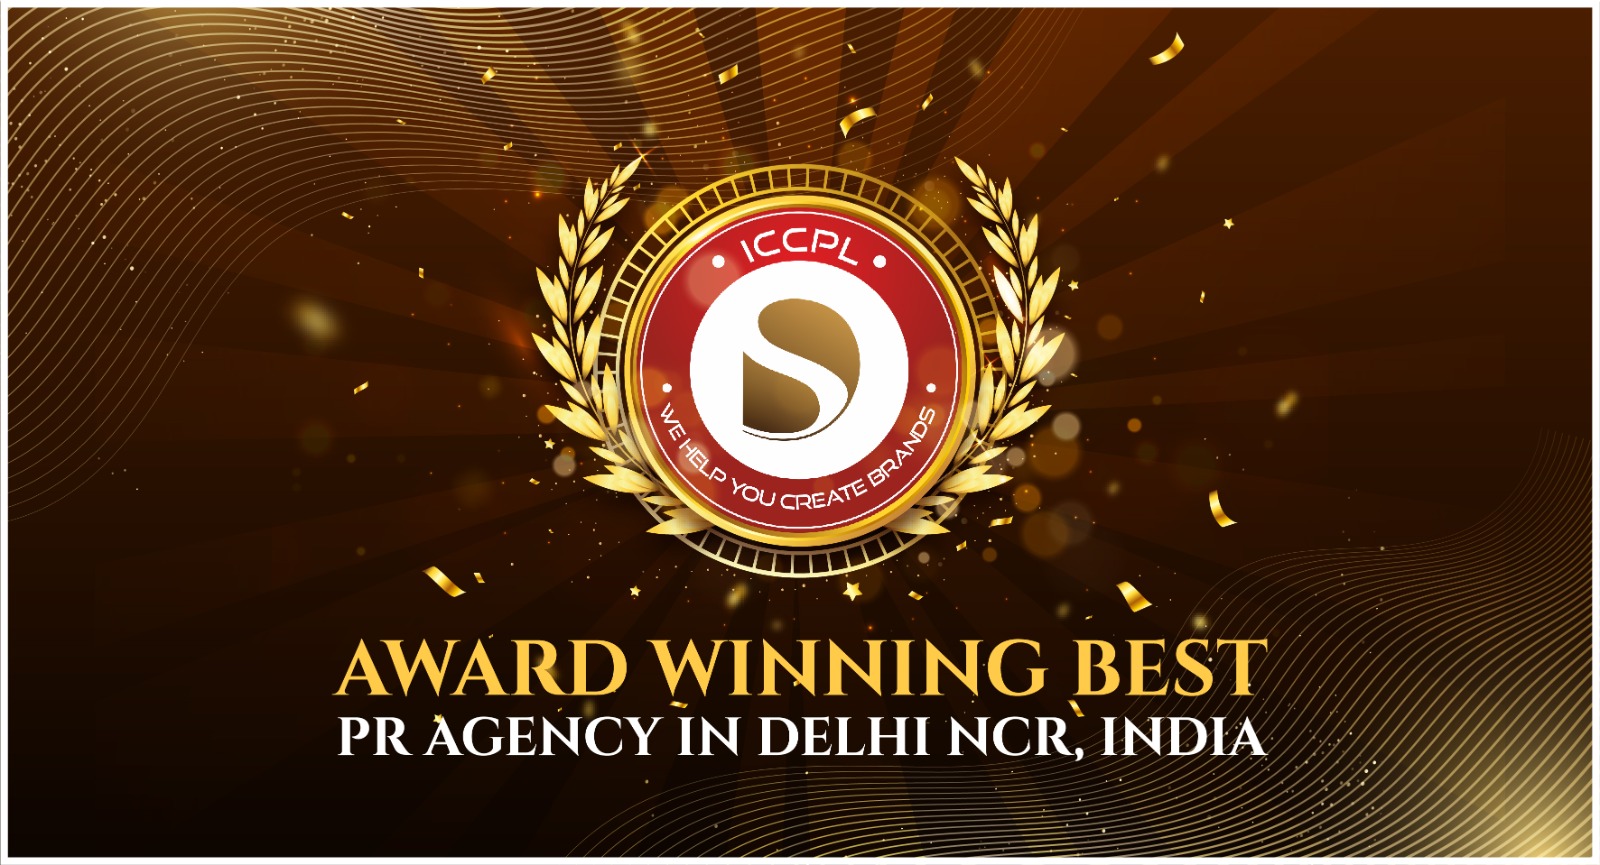 Award Winning Best PR Agency in Delhi NCR, India